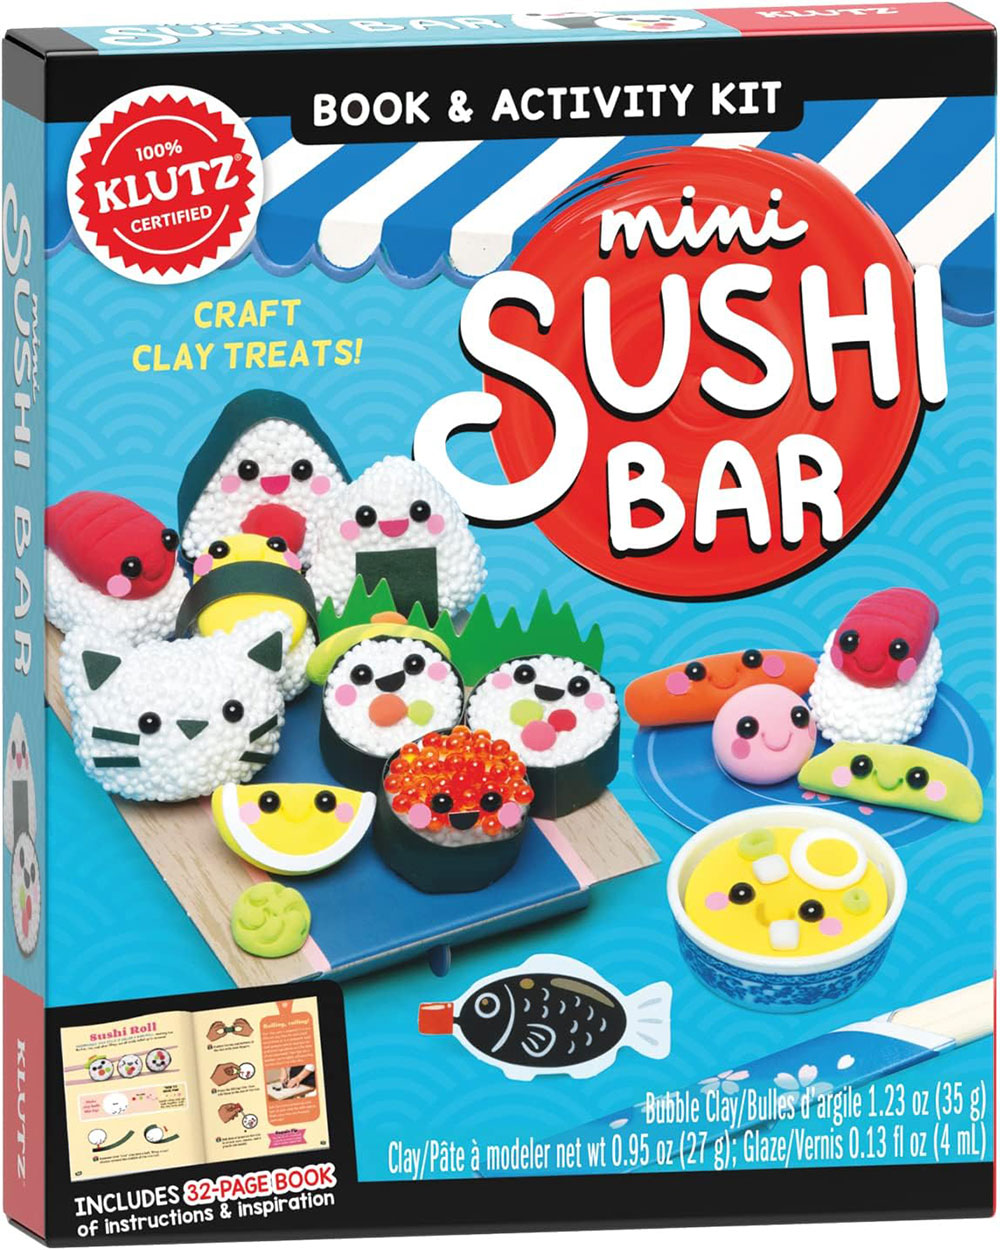 Box art for the Mini Sushi Bar kit